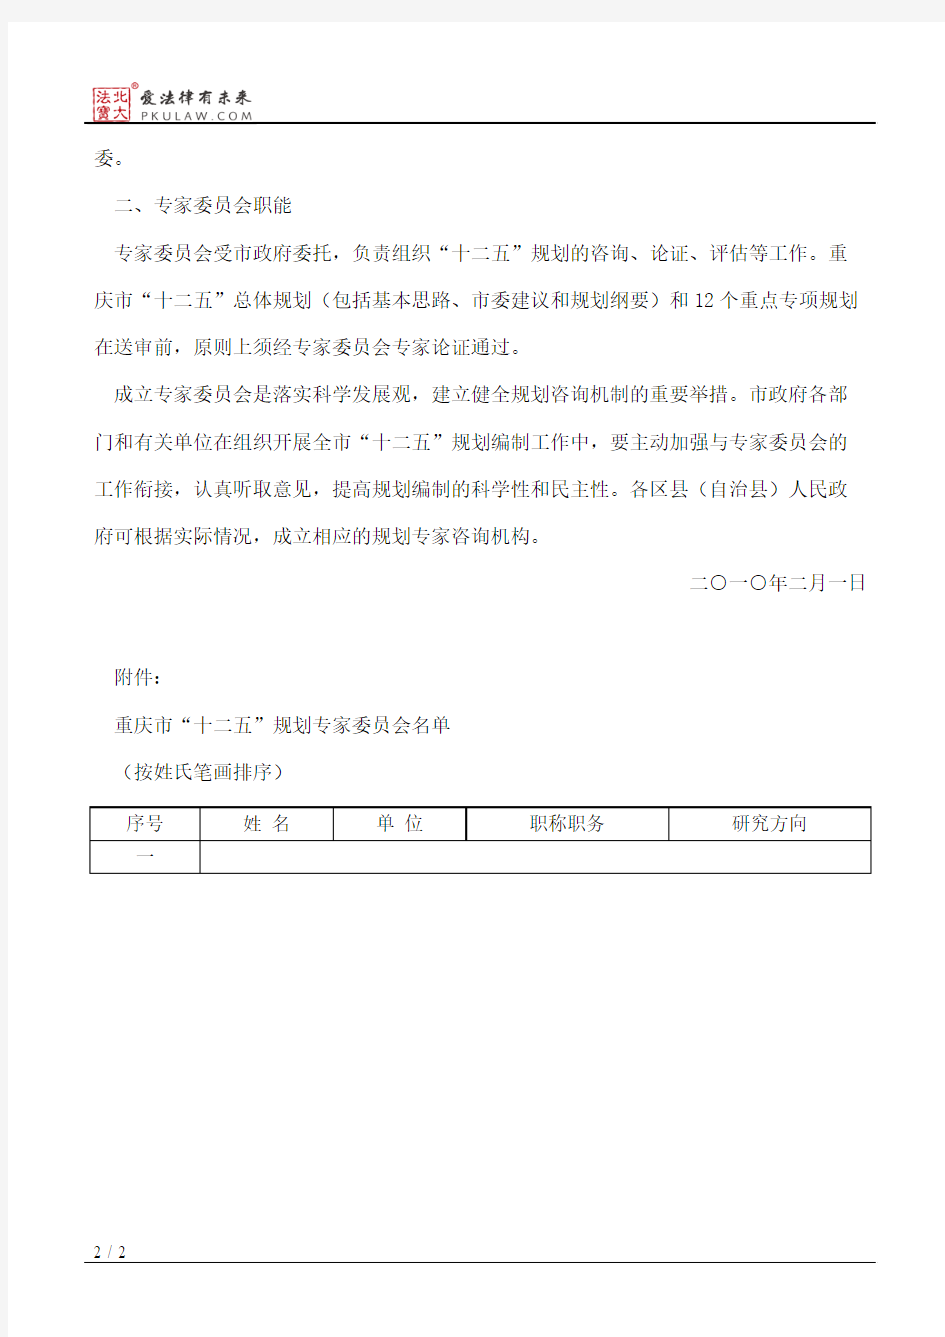 重庆市人民政府办公厅关于成立重庆市“十二五”规划专家委员会的通知